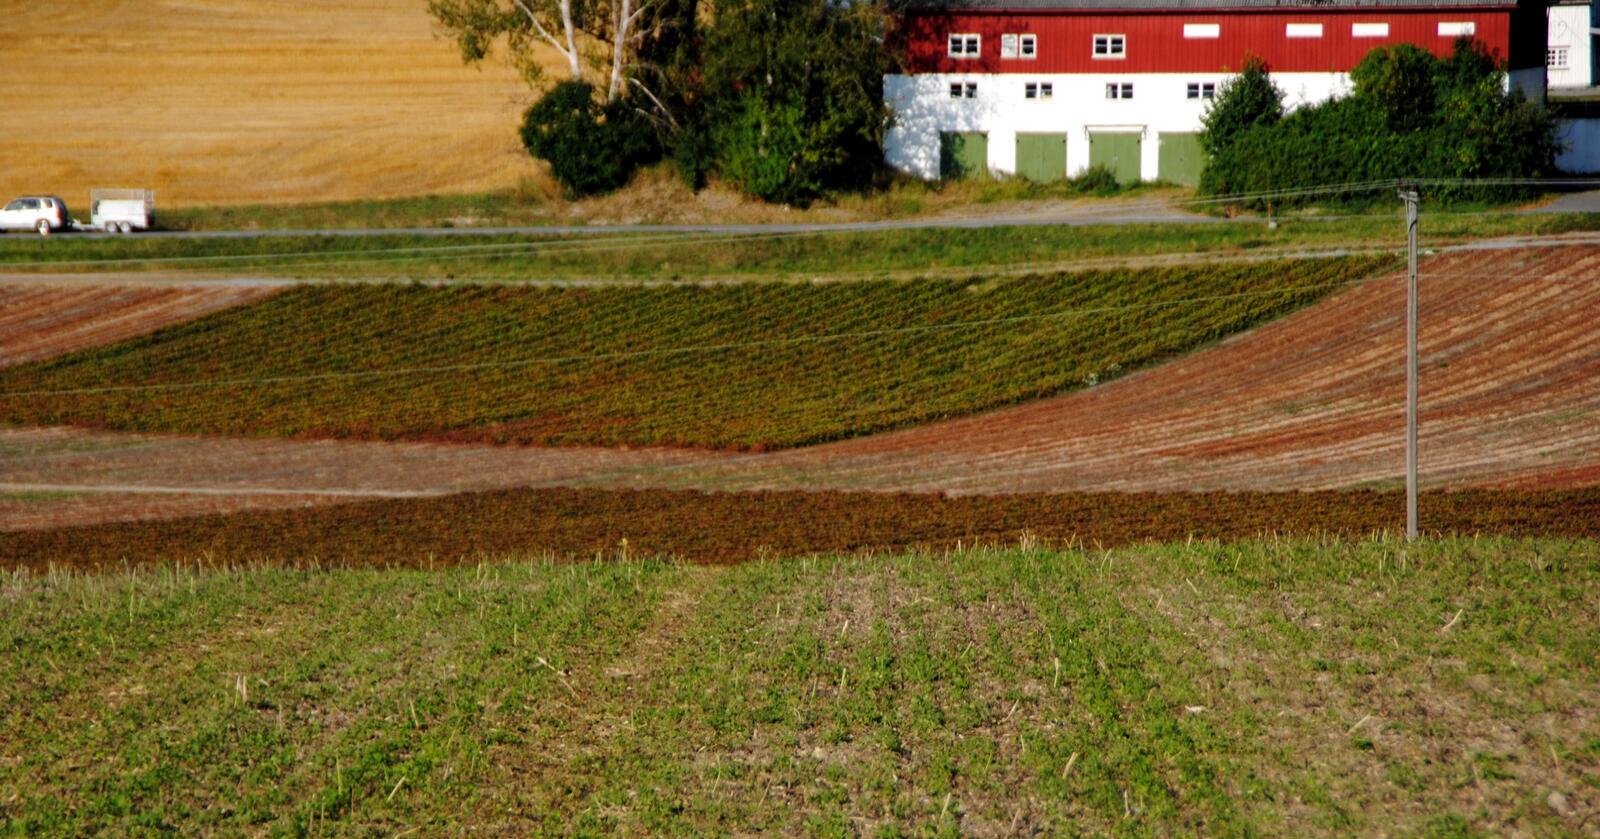 Forbedring av jordhelsen og lagring av mer karbon i jord er blant klimatiltak enkelte bønder har startet med. Her fra Ås i Akershus. Foto: Lars Bilit Hagen